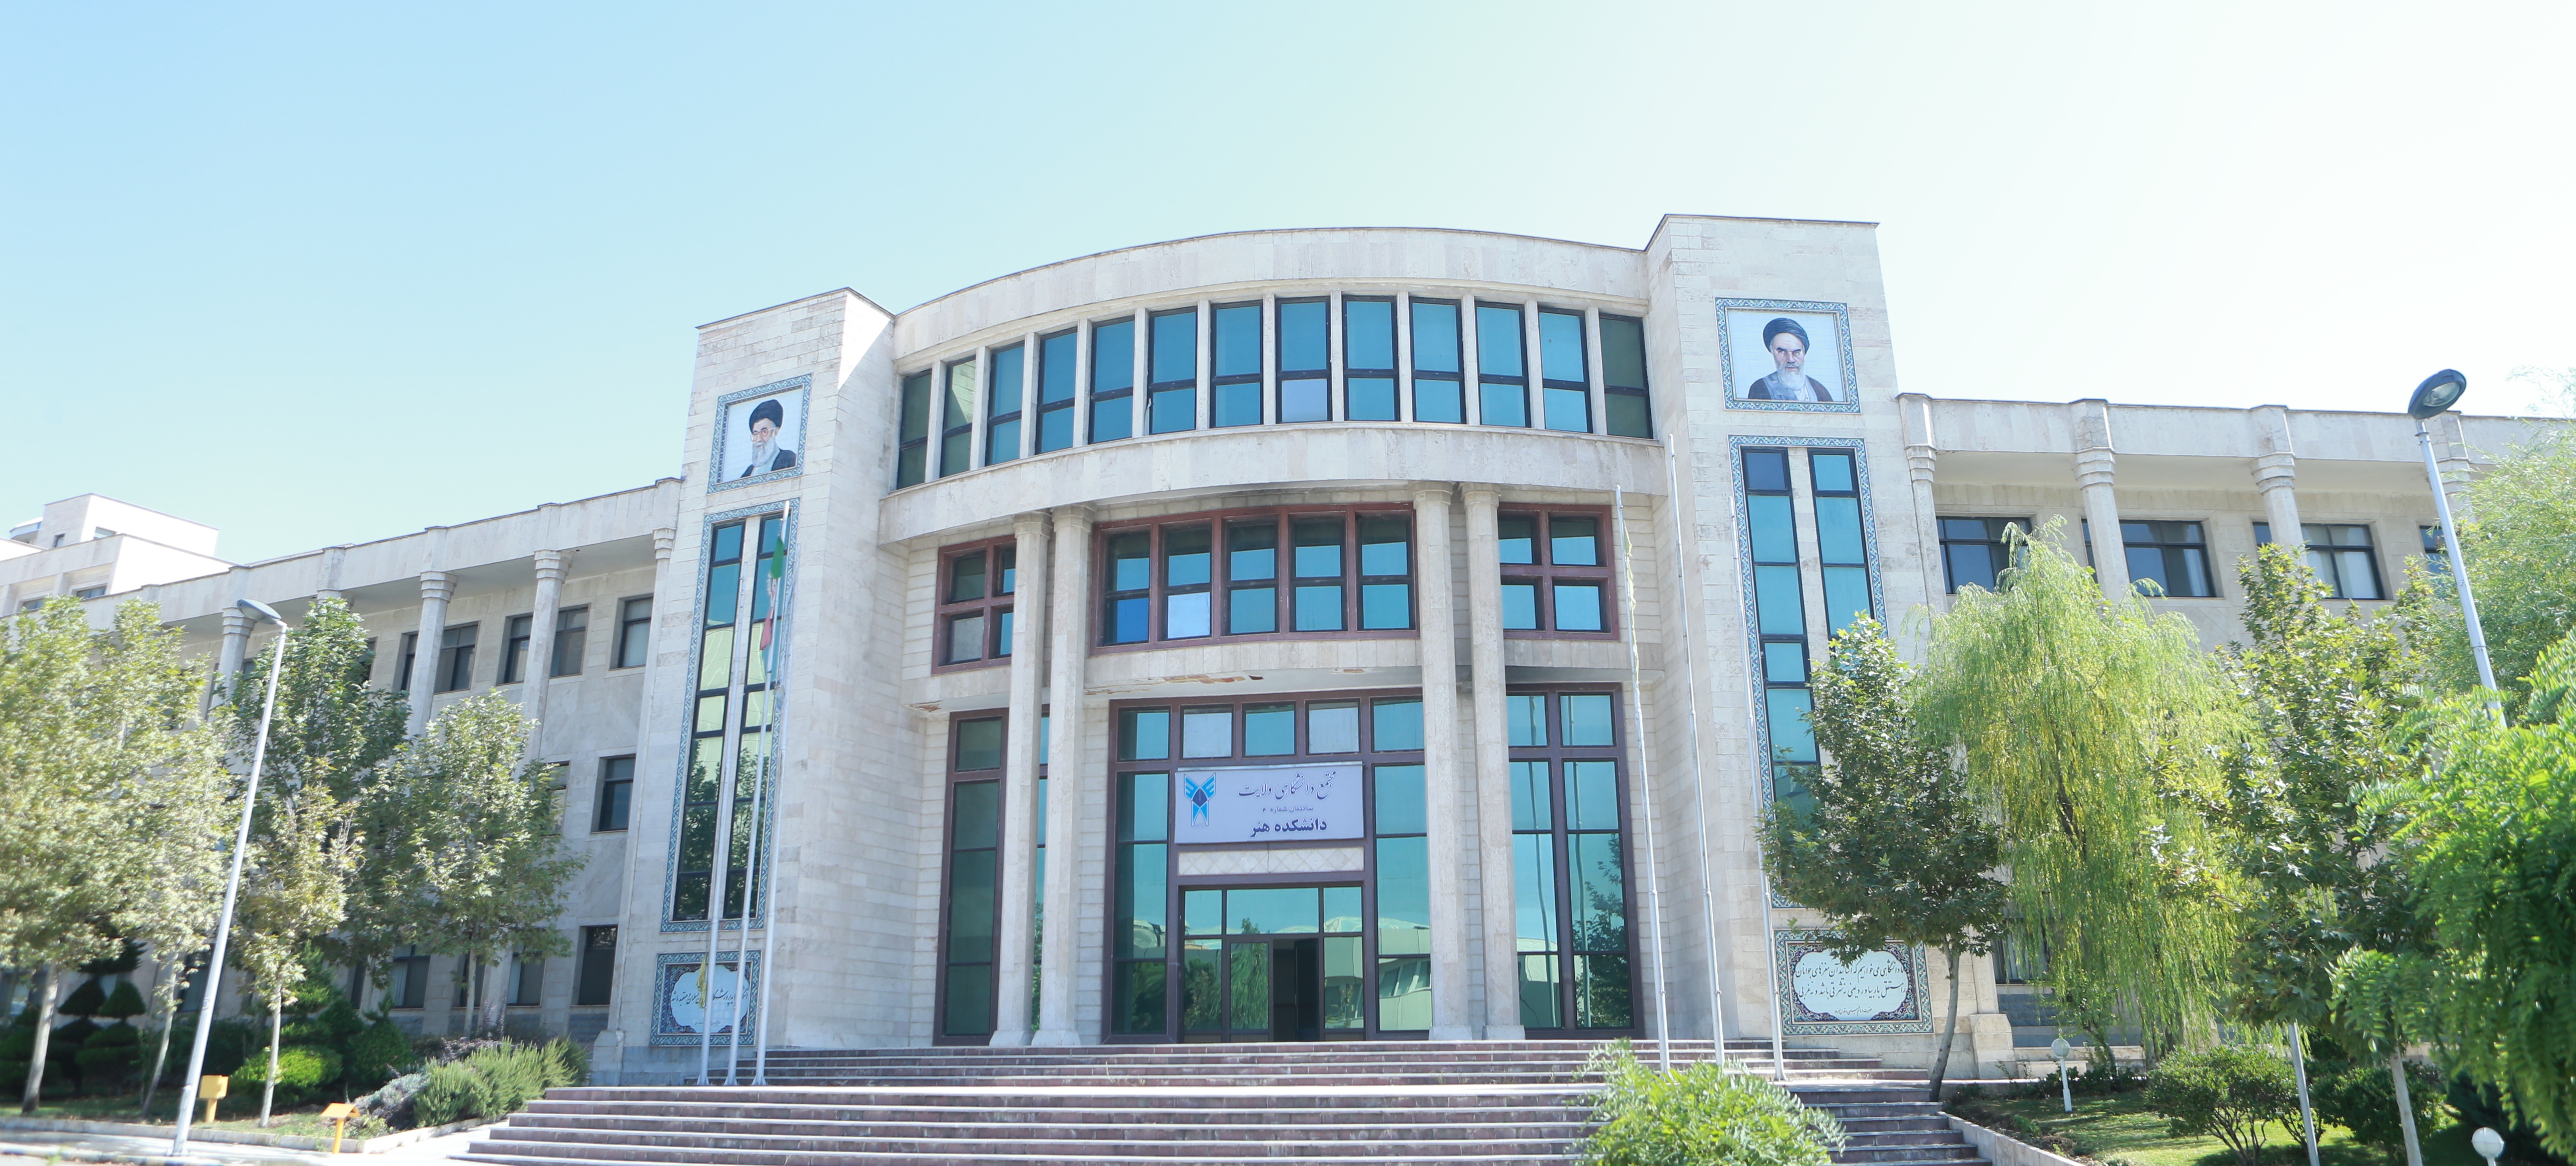 مرکز روانشناسی دانشگاه تهران
